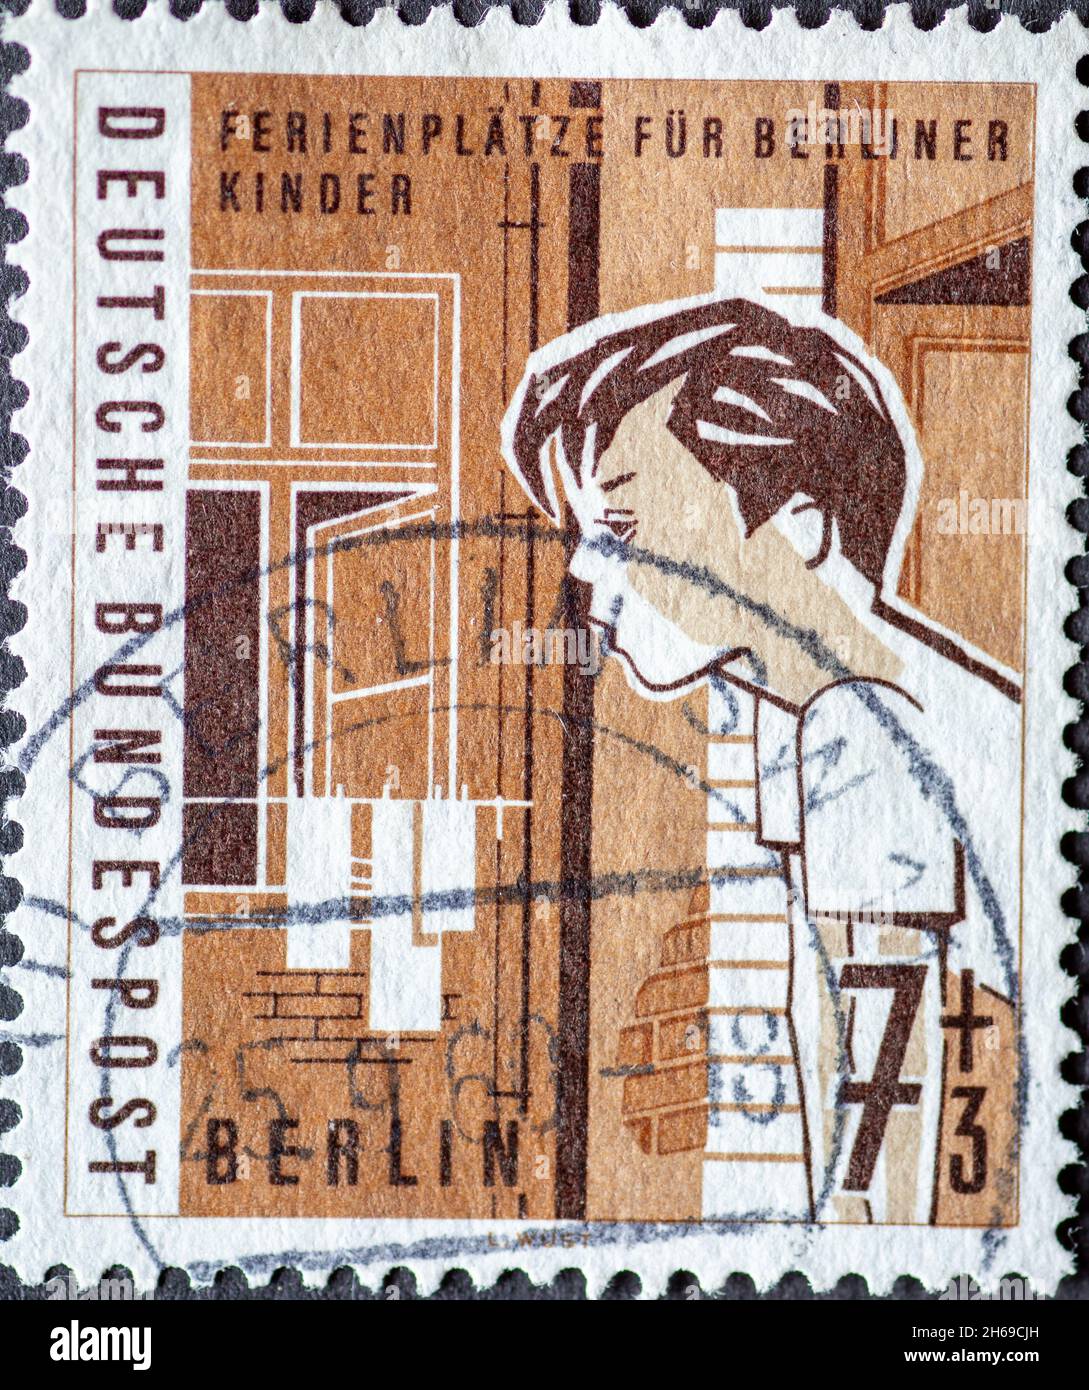 DEUTSCHLAND, Berlin - UM 1960: Eine Briefmarke aus Deutschland, Berlin hat das Motto: Urlaubsziele für Kinder in Berlin Hier: Junge schaut aus dem Fenster Stockfoto